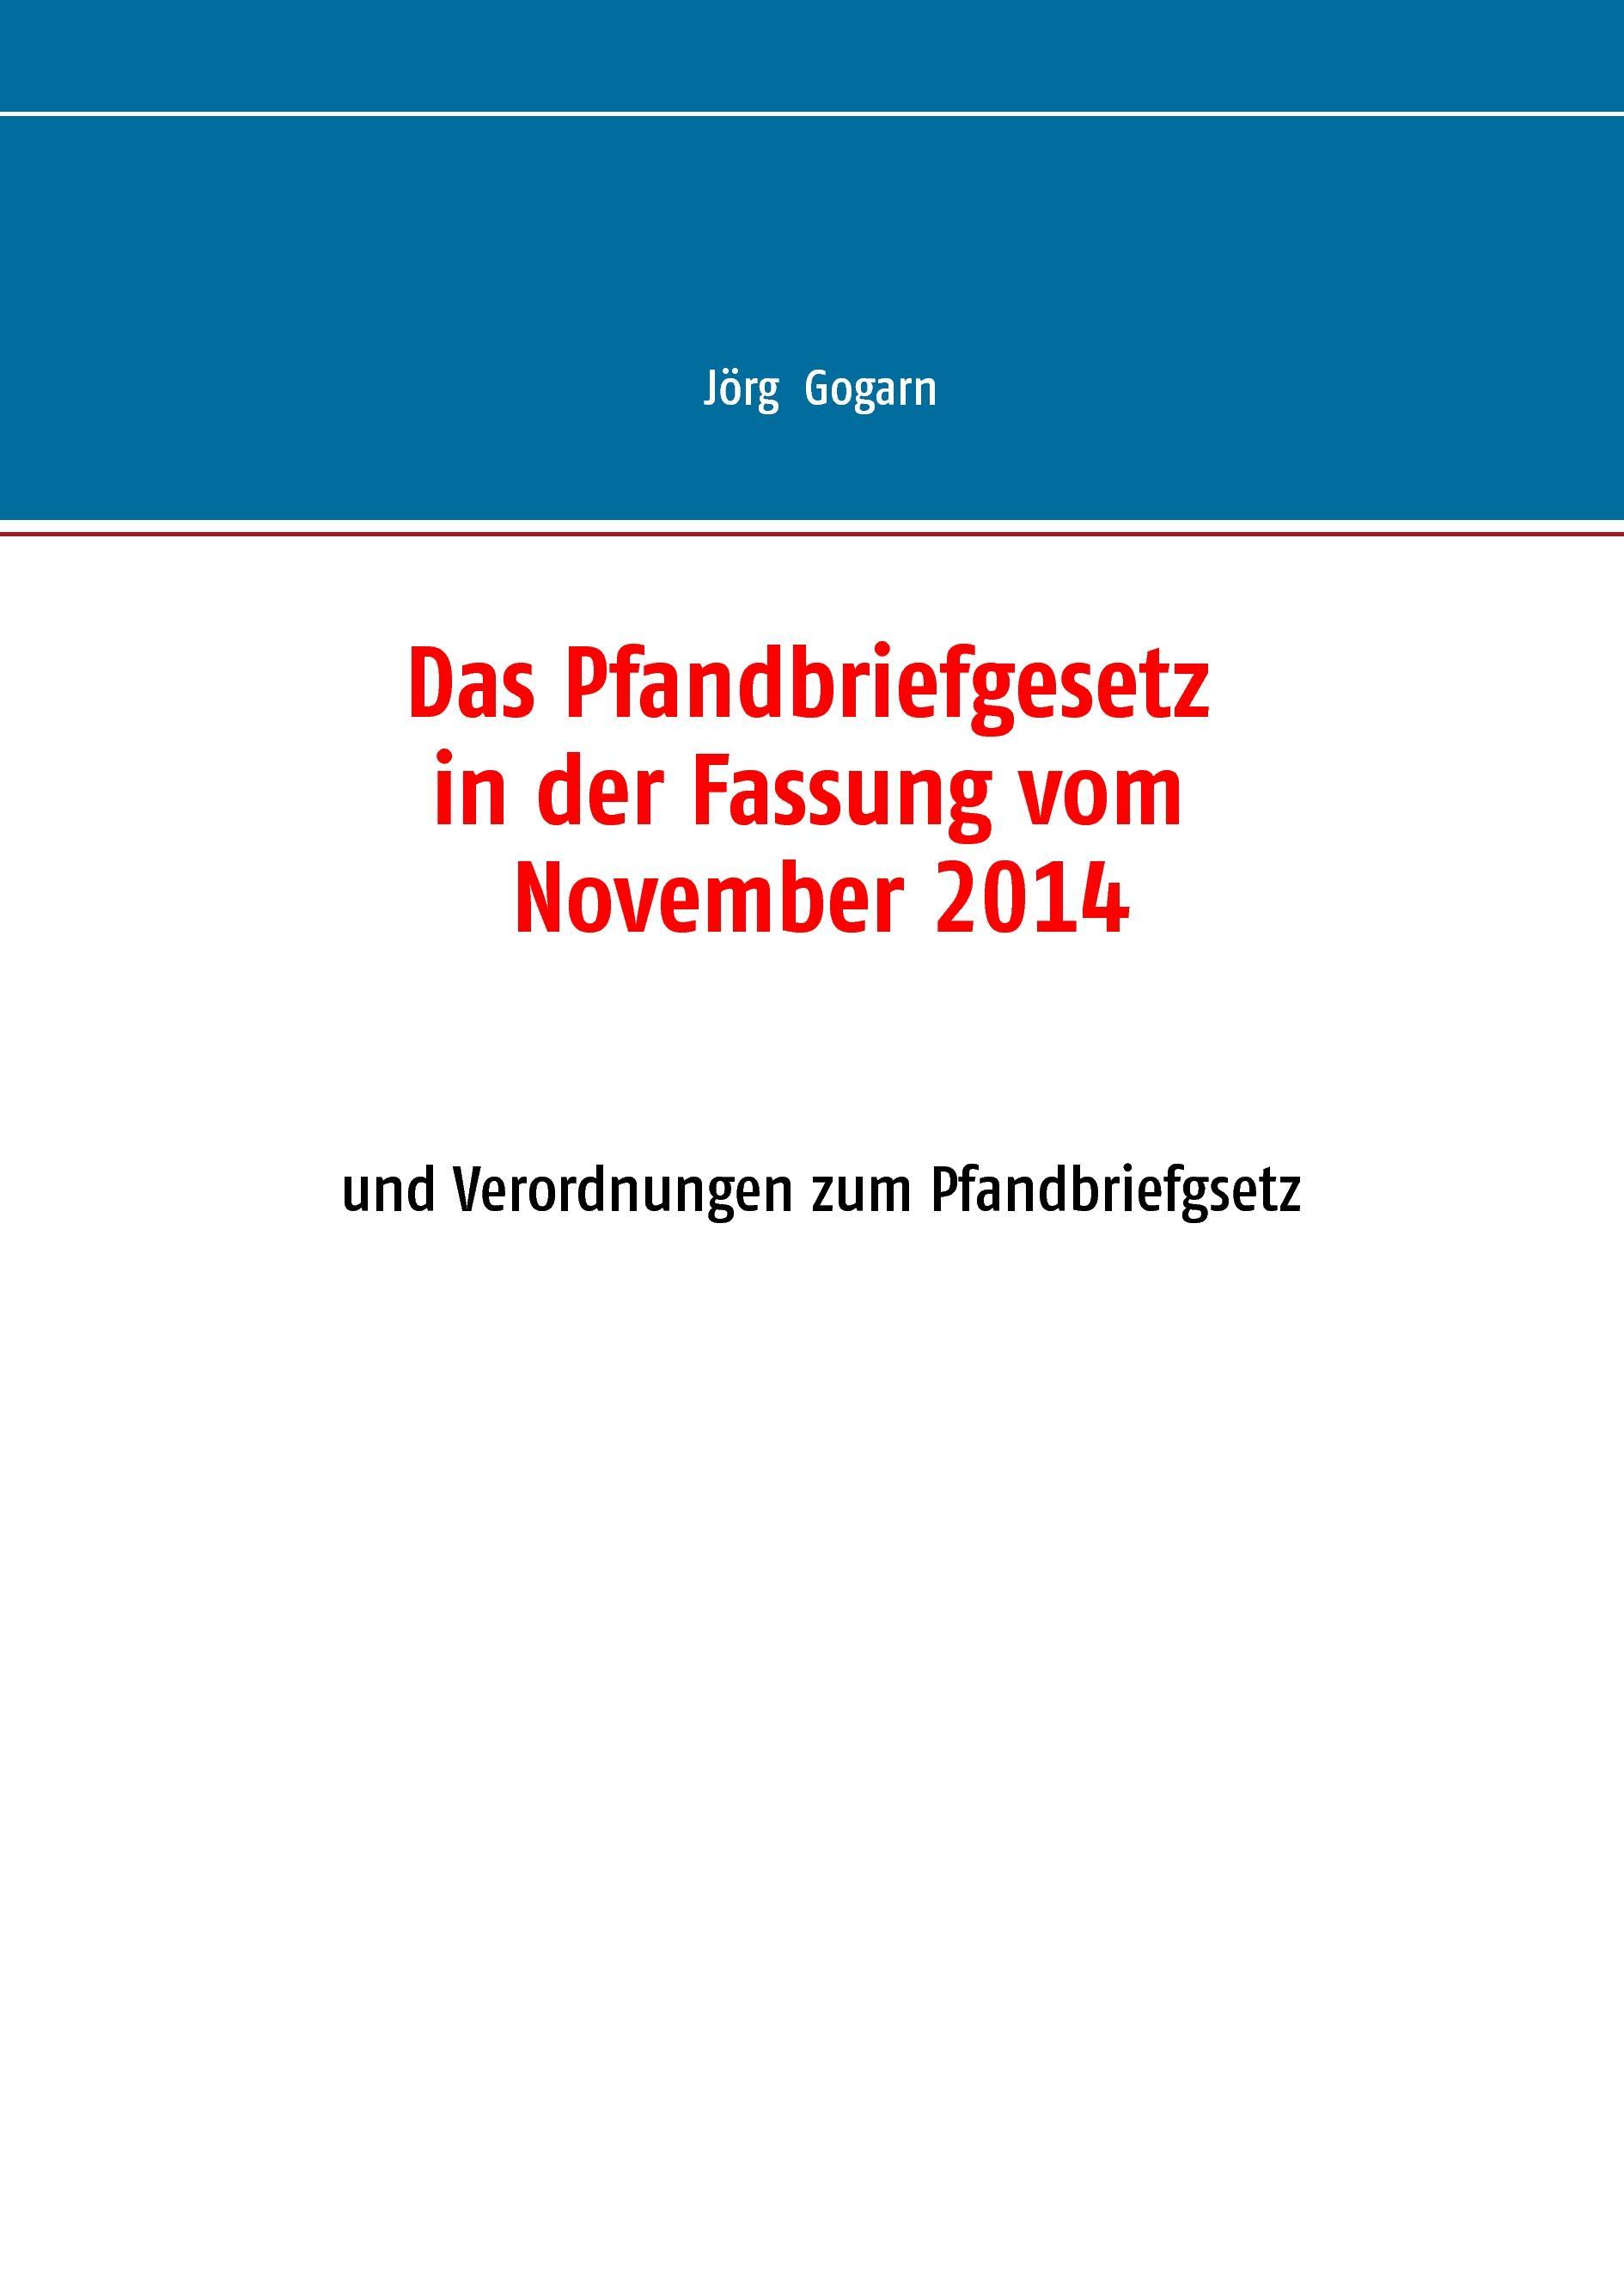 Das Pfandbriefgesetz in der Fassung vom November 2014 - Gogarn, Jörg